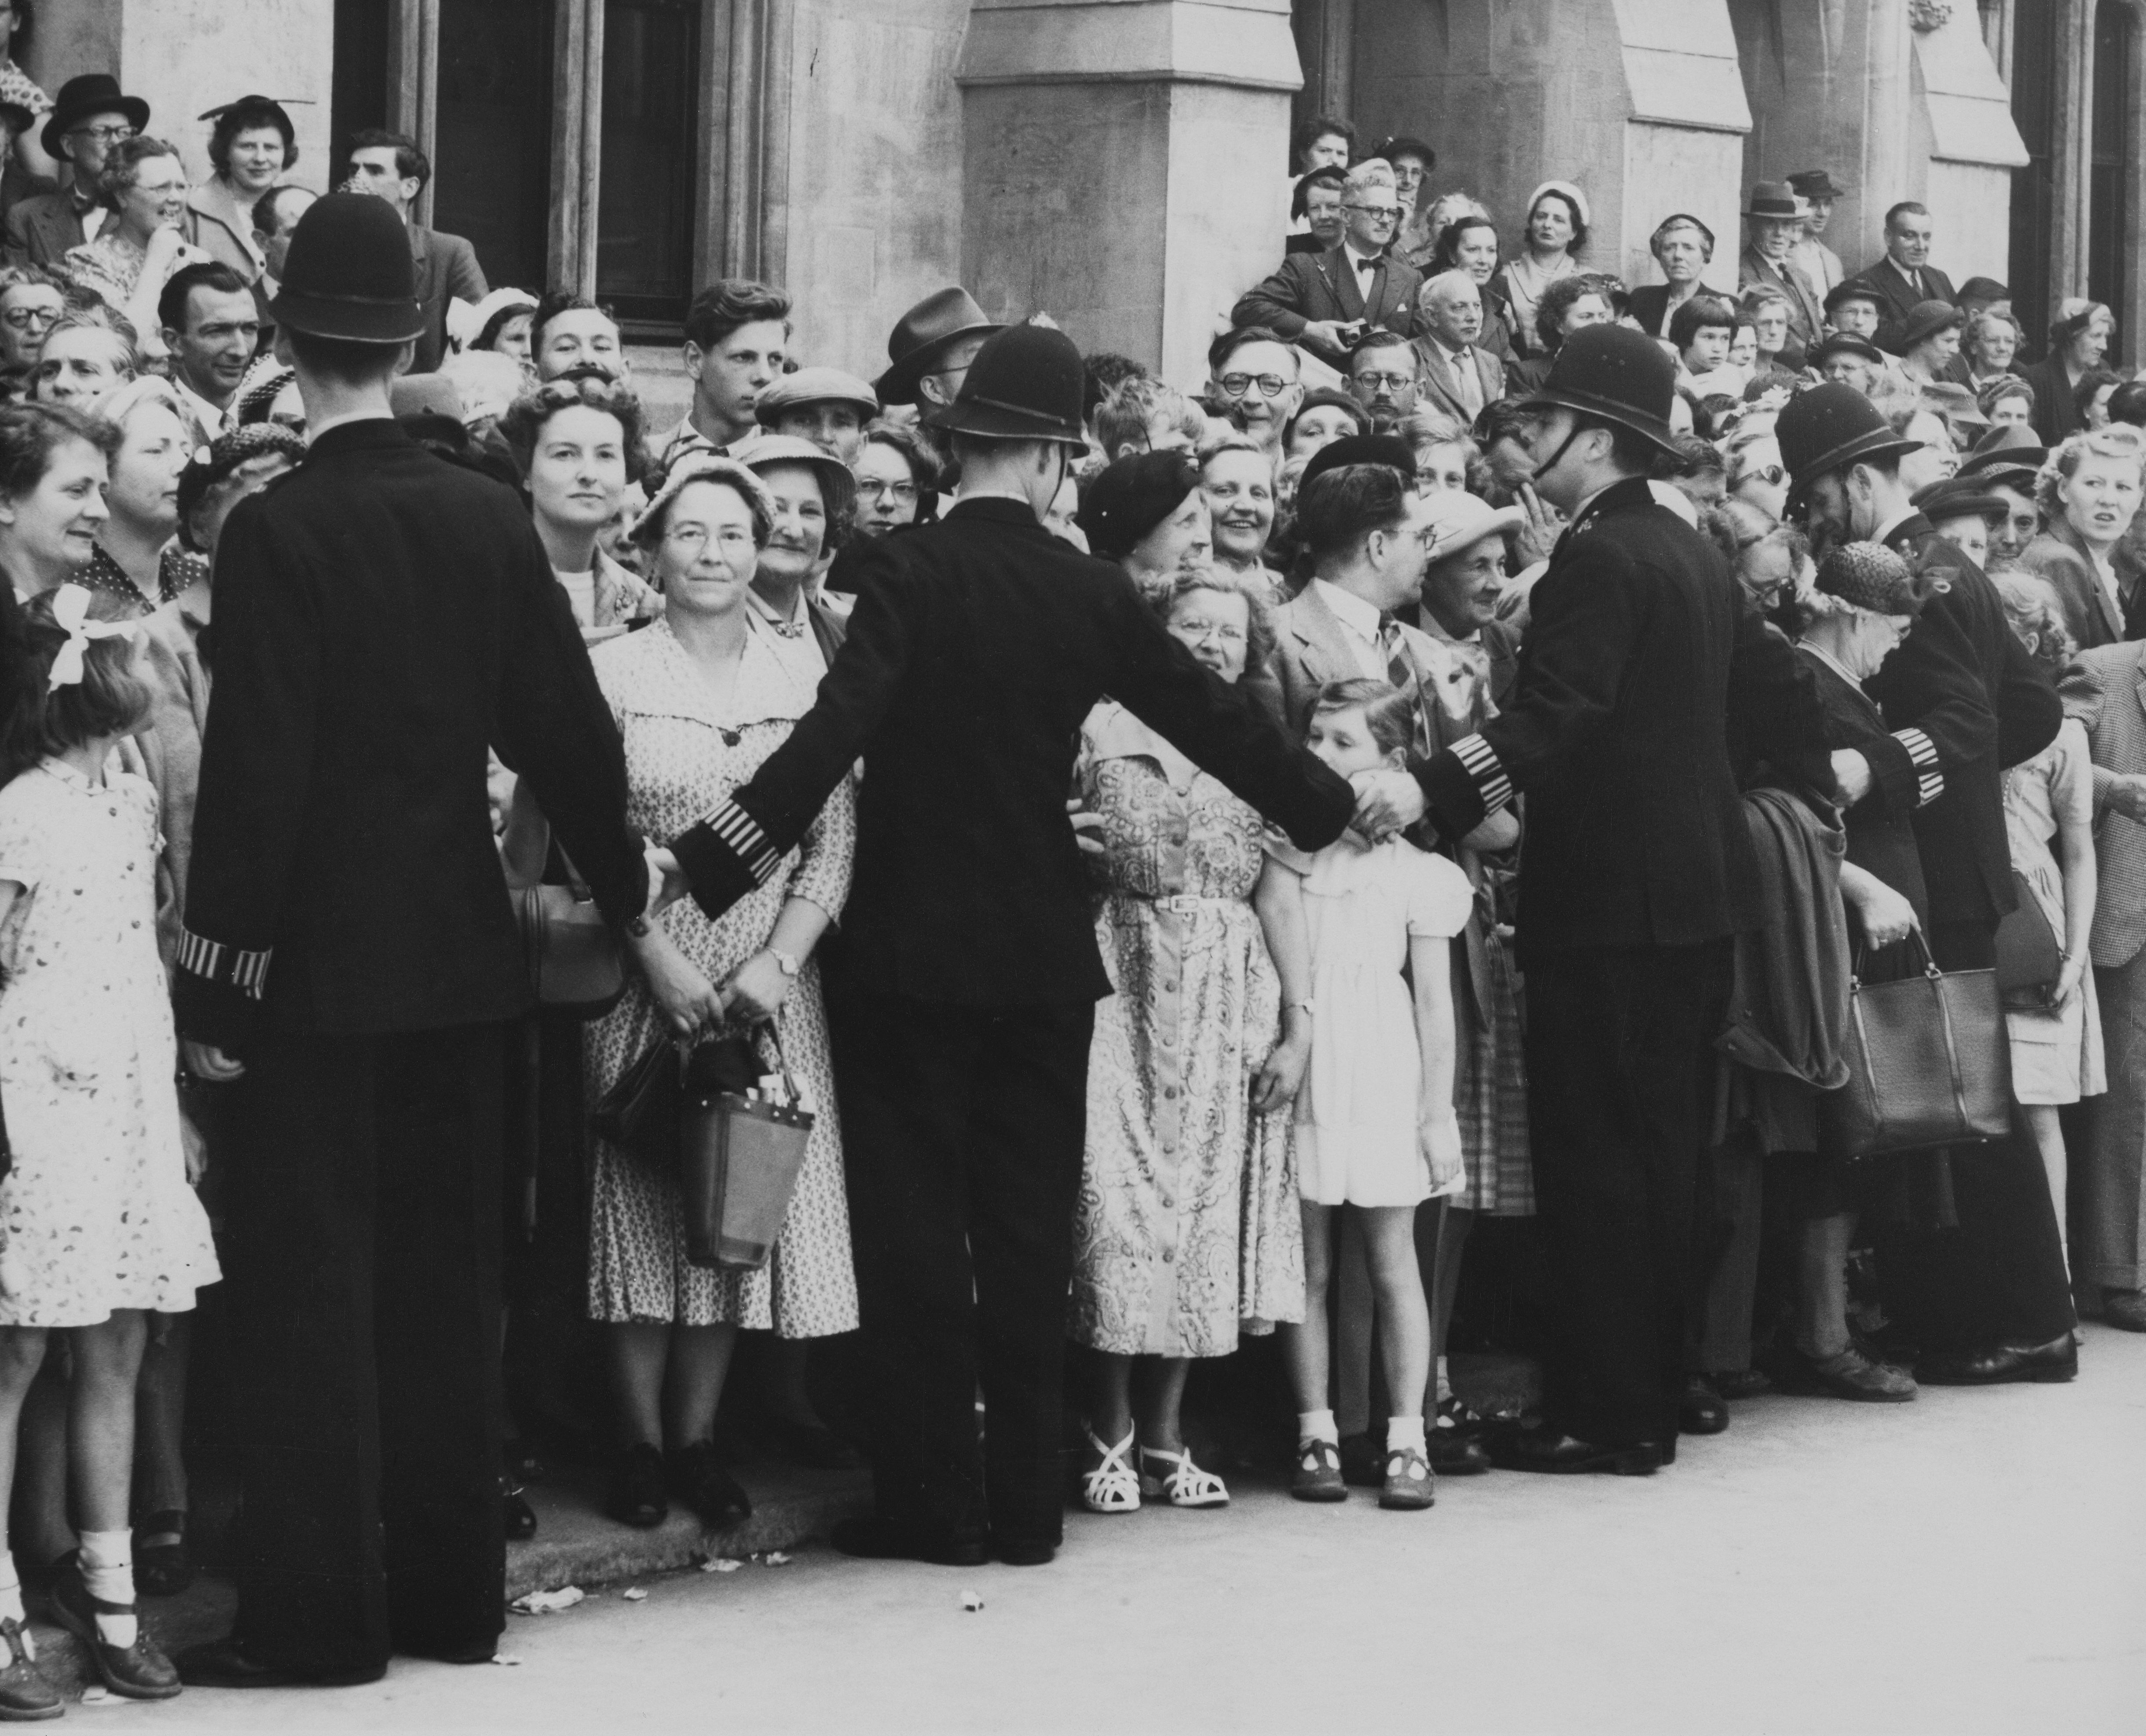 Antes del gran día, el 26 de mayo de 1953 los agentes ya tuvieron que formar un cordón policial para controlar a numerosos curiosos que no se quisieron perder ni siquiera los ensayos para la procesión de la coronación en la abadía de Westminster, en la capital británica.